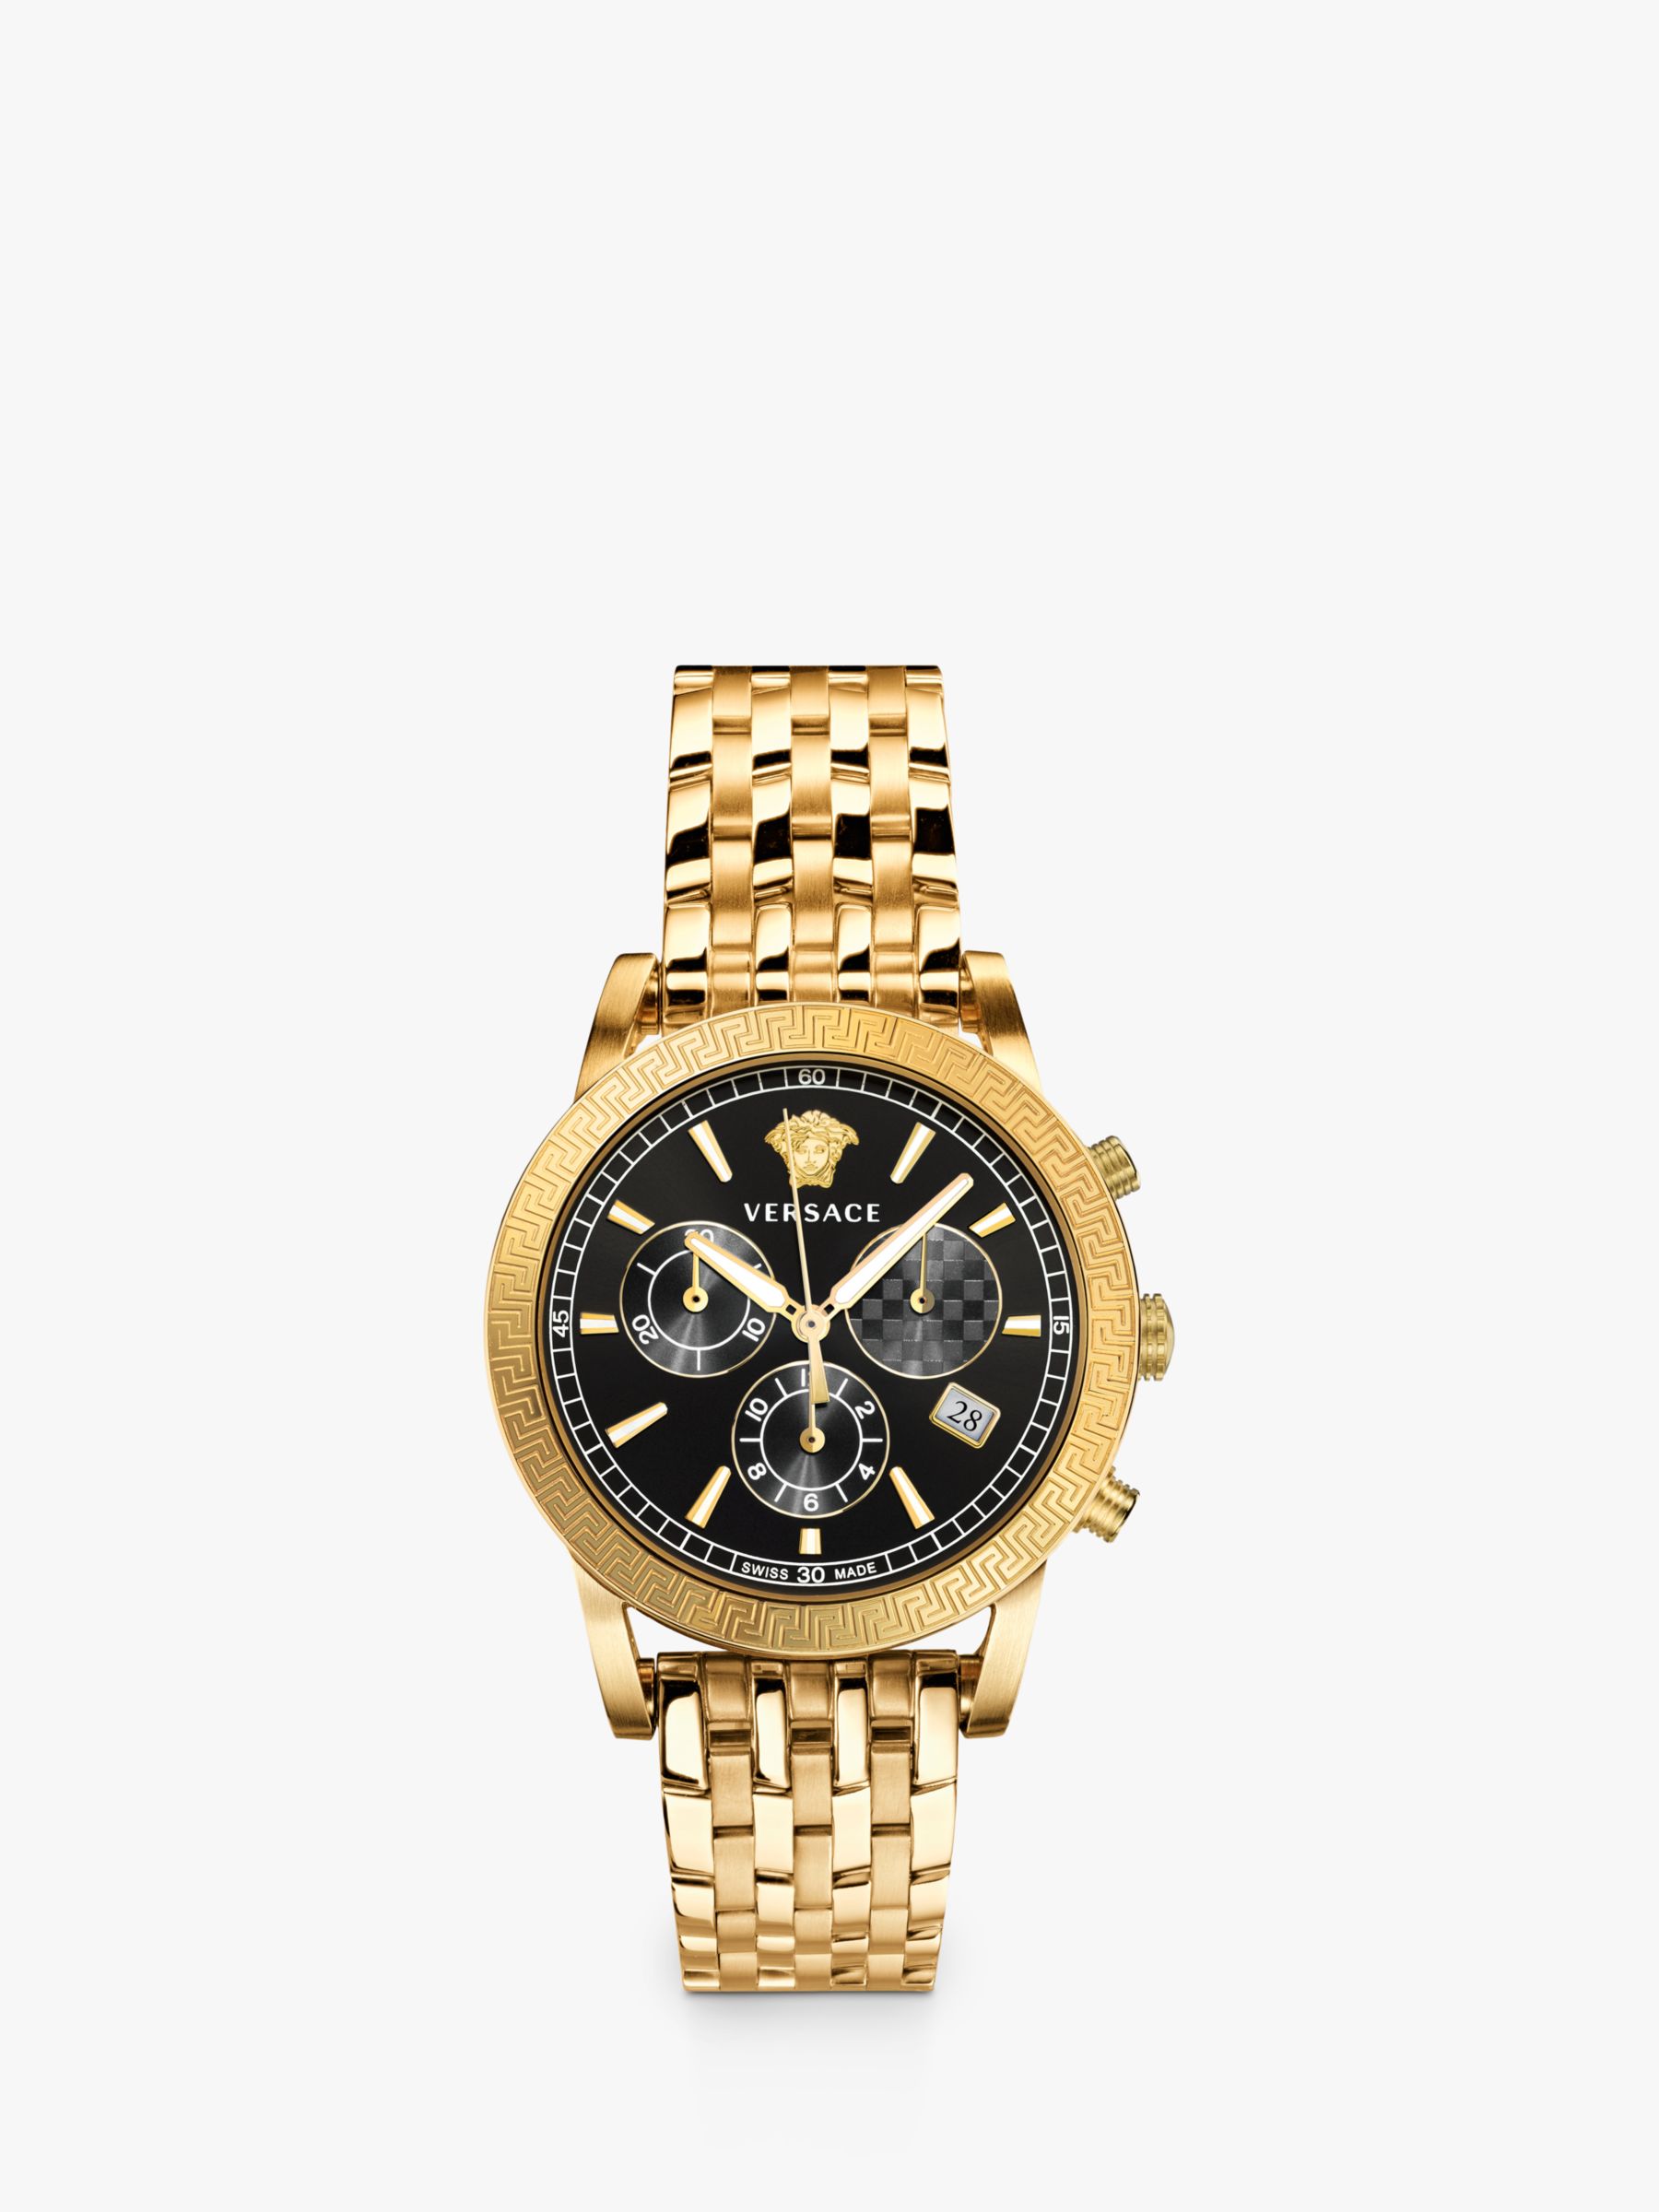 versace men's gold watches